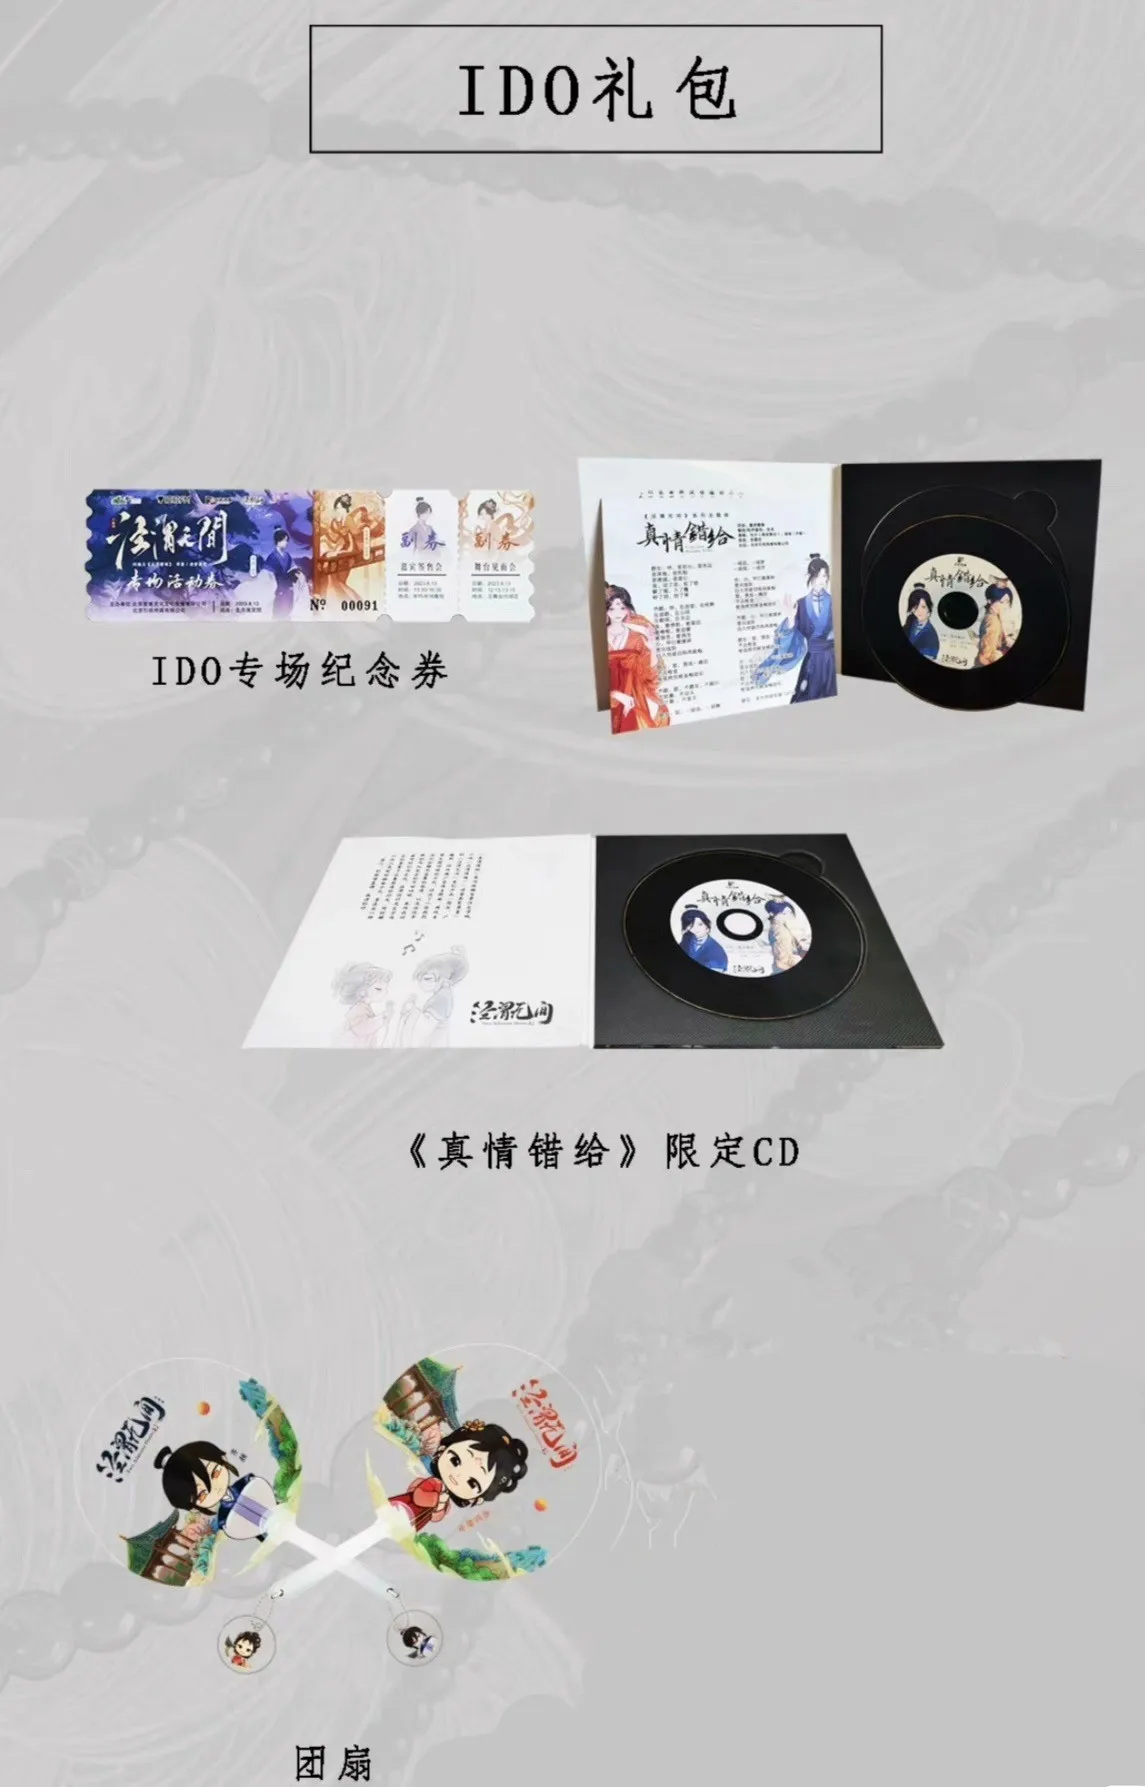 

In Stock Chinese GL Novel Jing Wei Wu Jian/Jing Wei Qing Shang By Qing Jun Mo Xiao Limited Gift I Do Gift Bag Limited CD Pendant